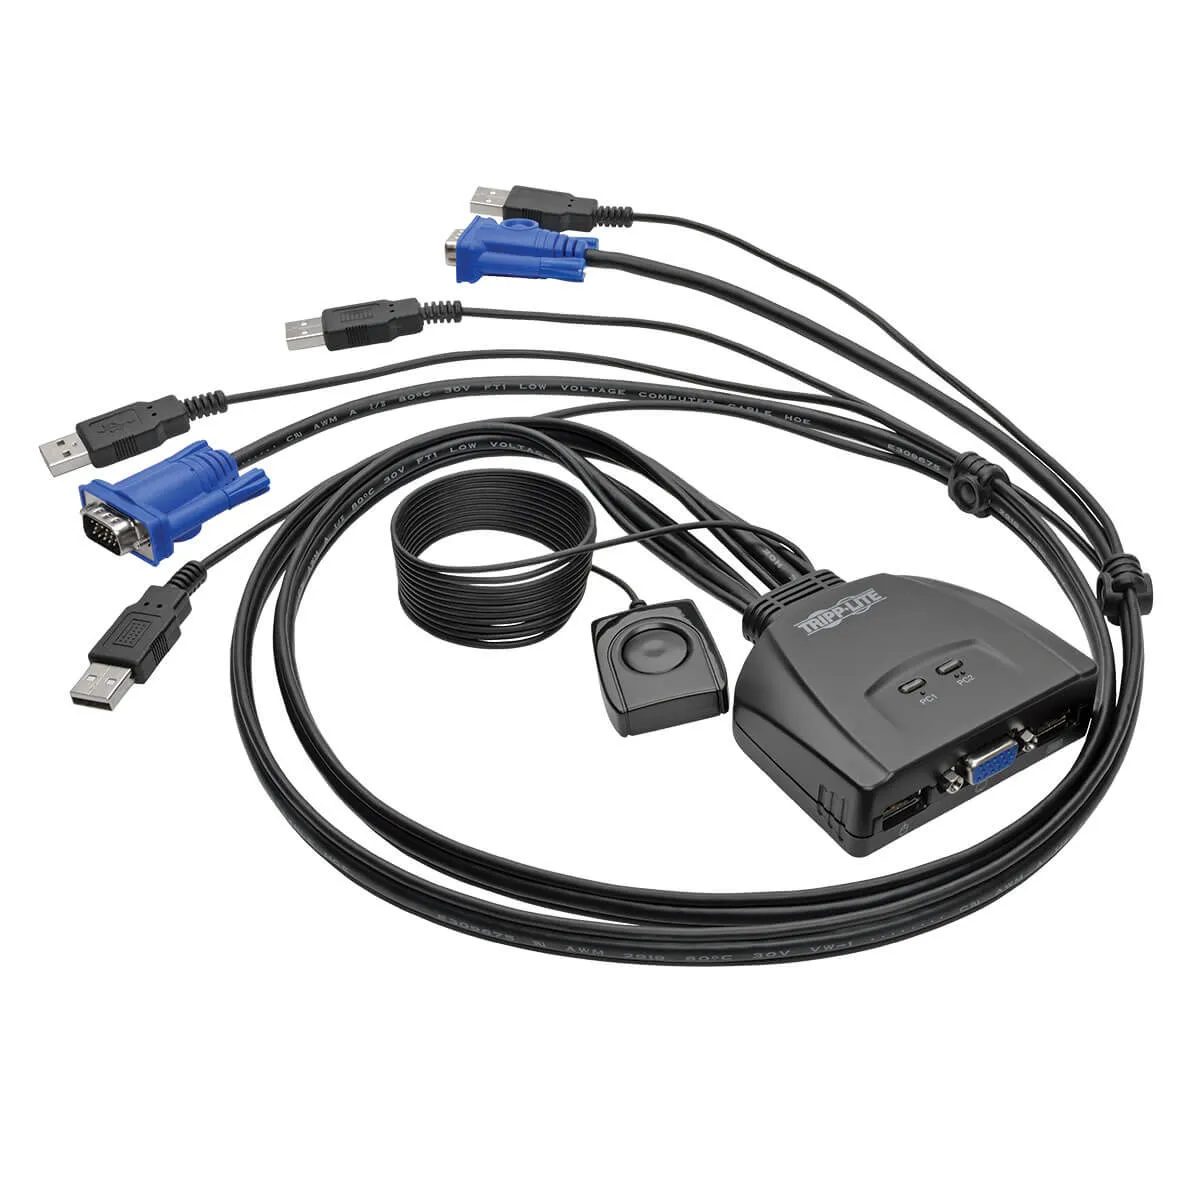 Achat EATON TRIPPLITE 2-Port USB/VGA Cable KVM Switch with au meilleur prix